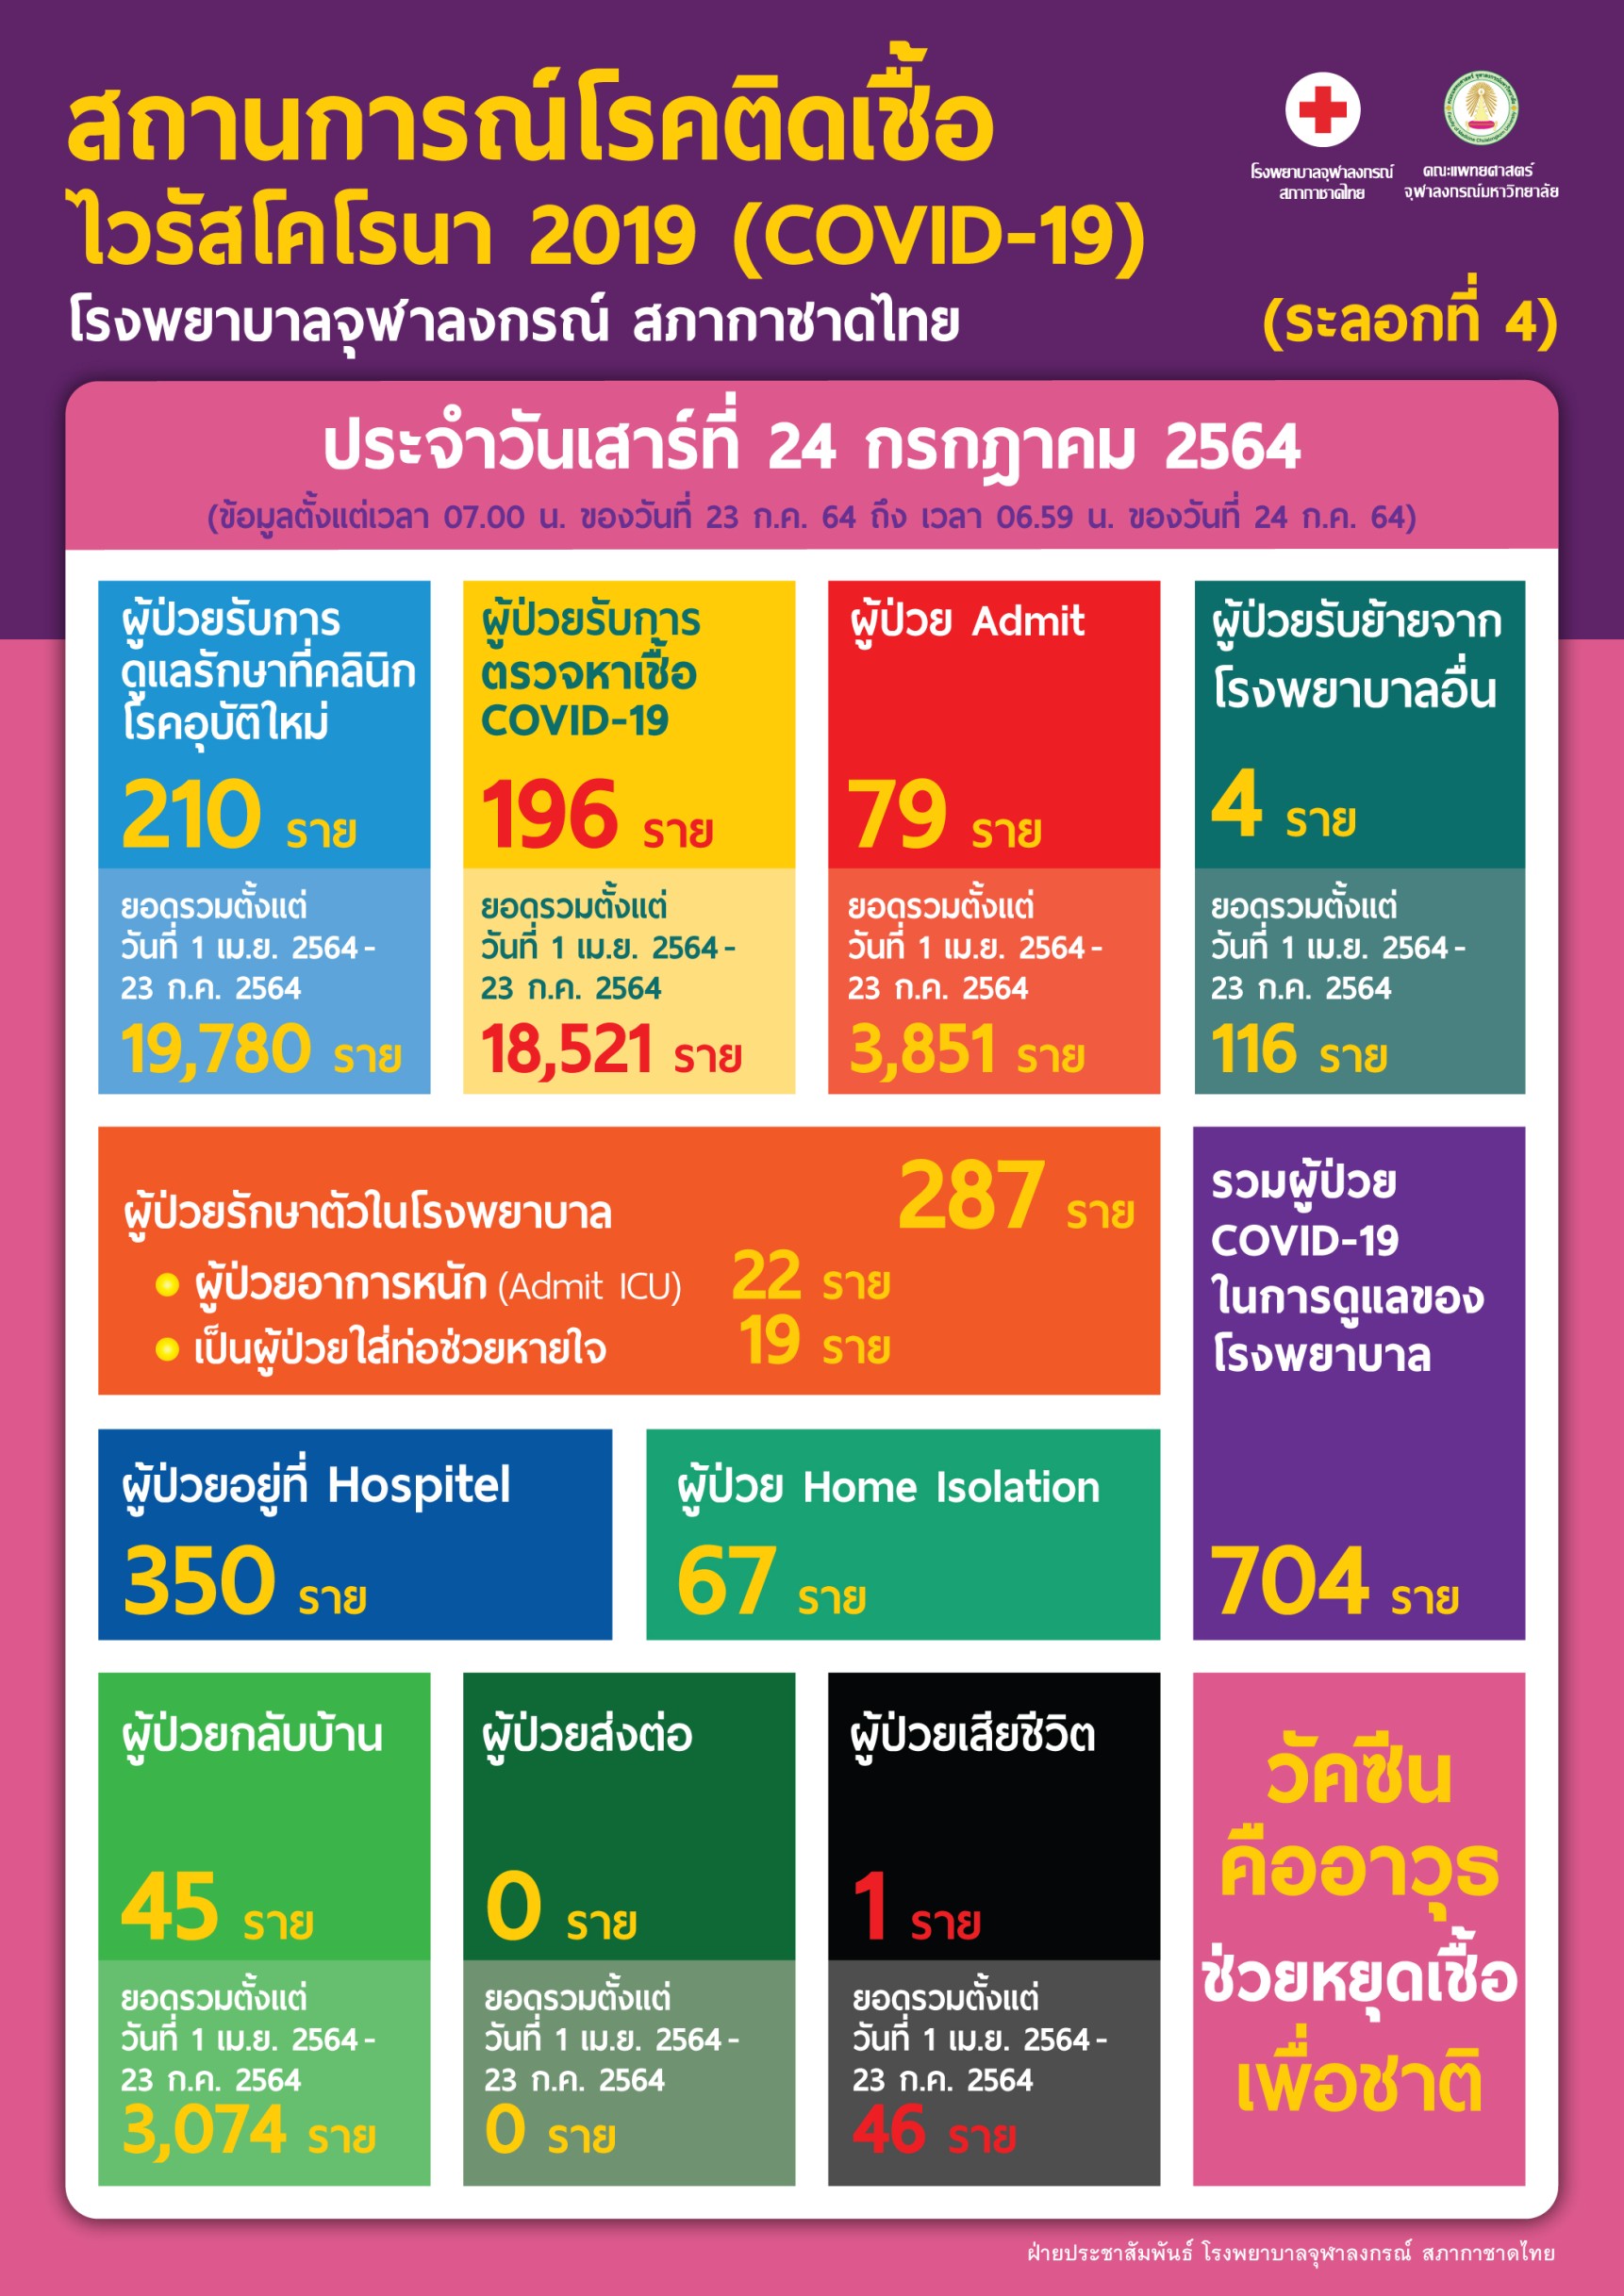 สถานการณ์โรคติดเชื้อไวรัสโคโรนา 2019 (COVID-19) (ระลอกที่ 4) โรงพยาบาลจุฬาลงกรณ์ สภากาชาดไทยประจำวันเสาร์ที่ 24 กรกฎาคม 2564